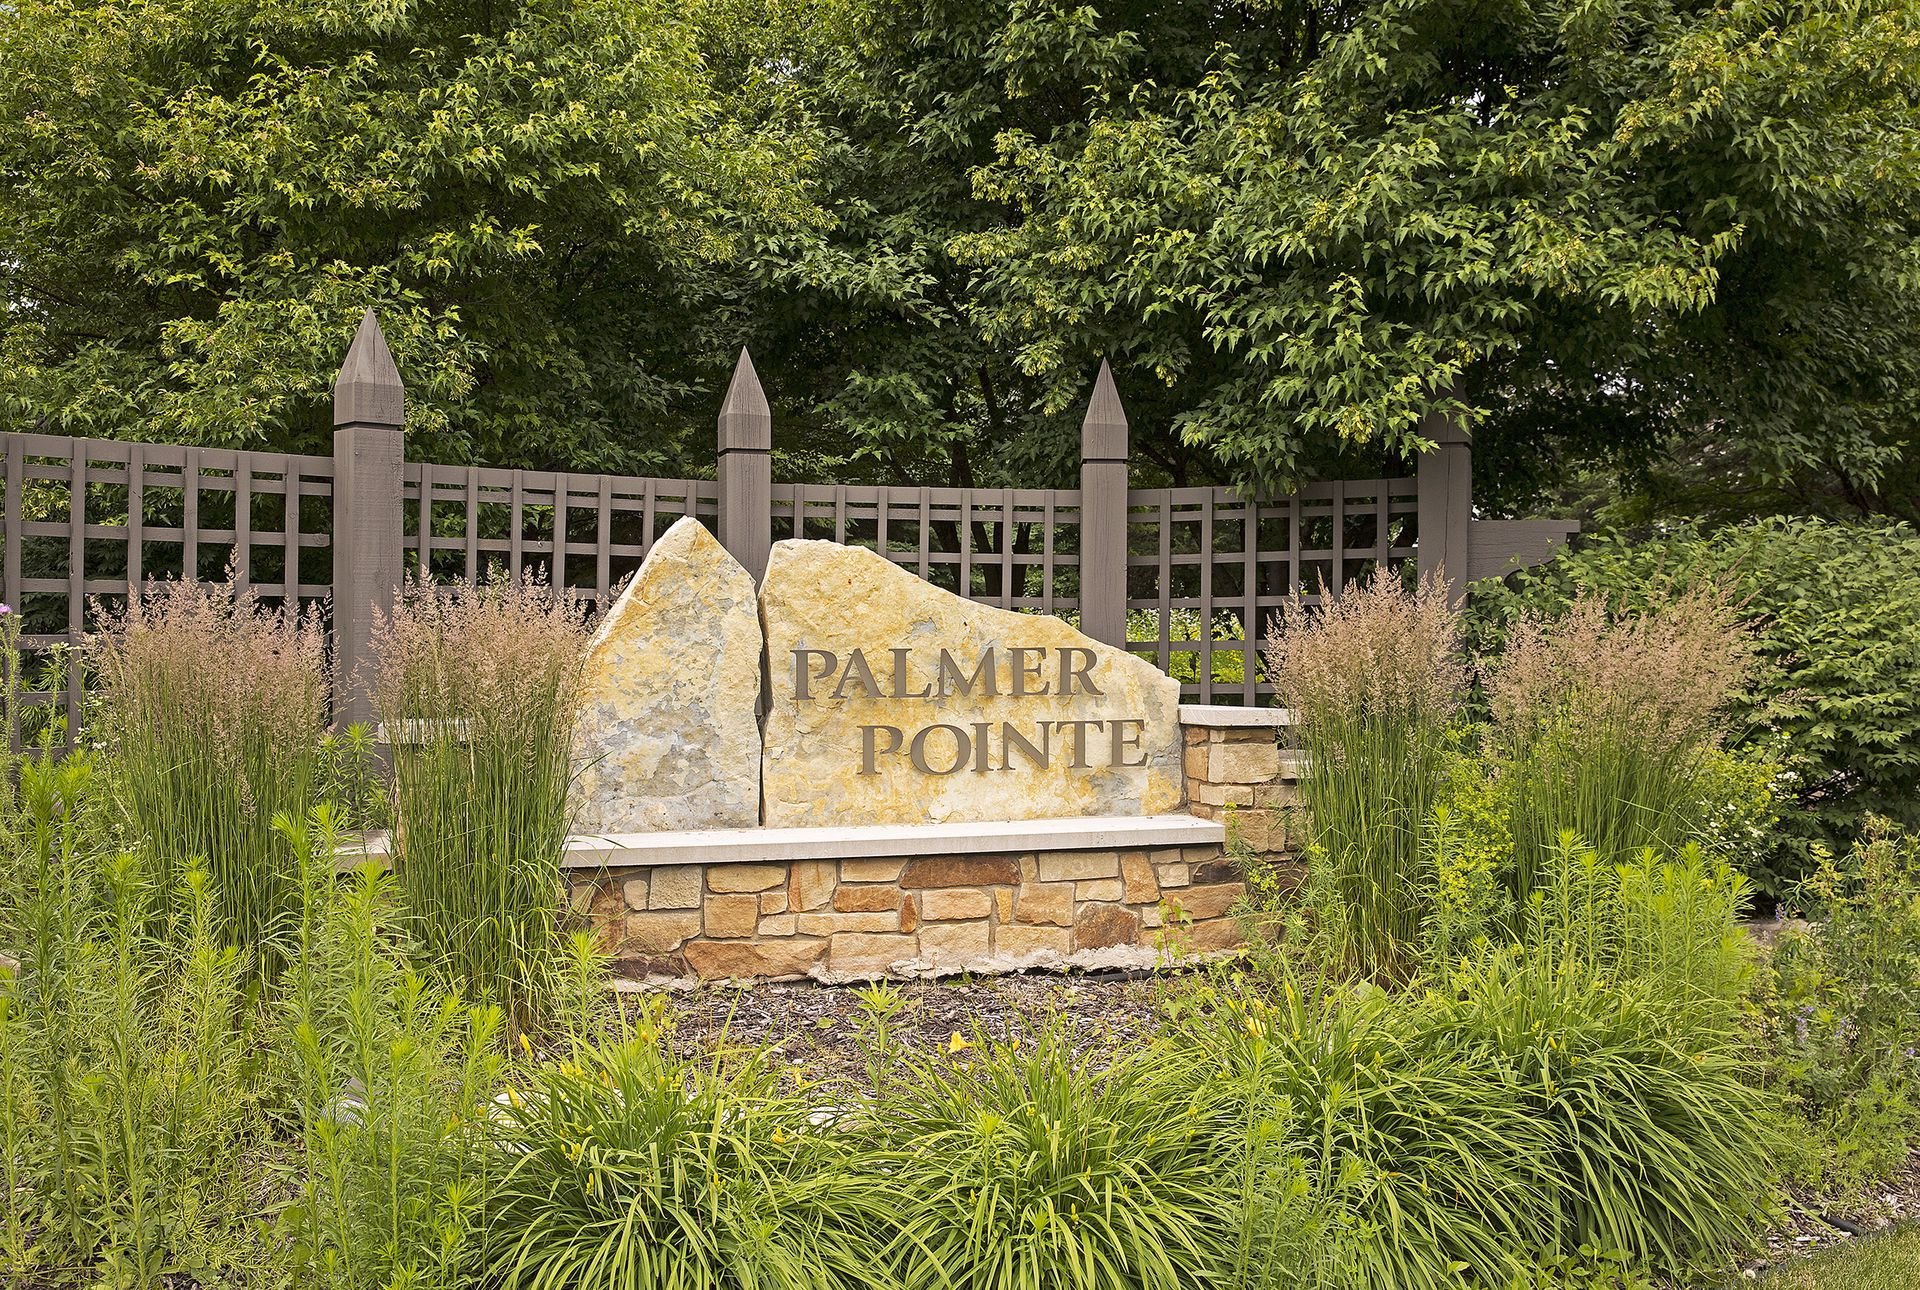 Palmer Pointe